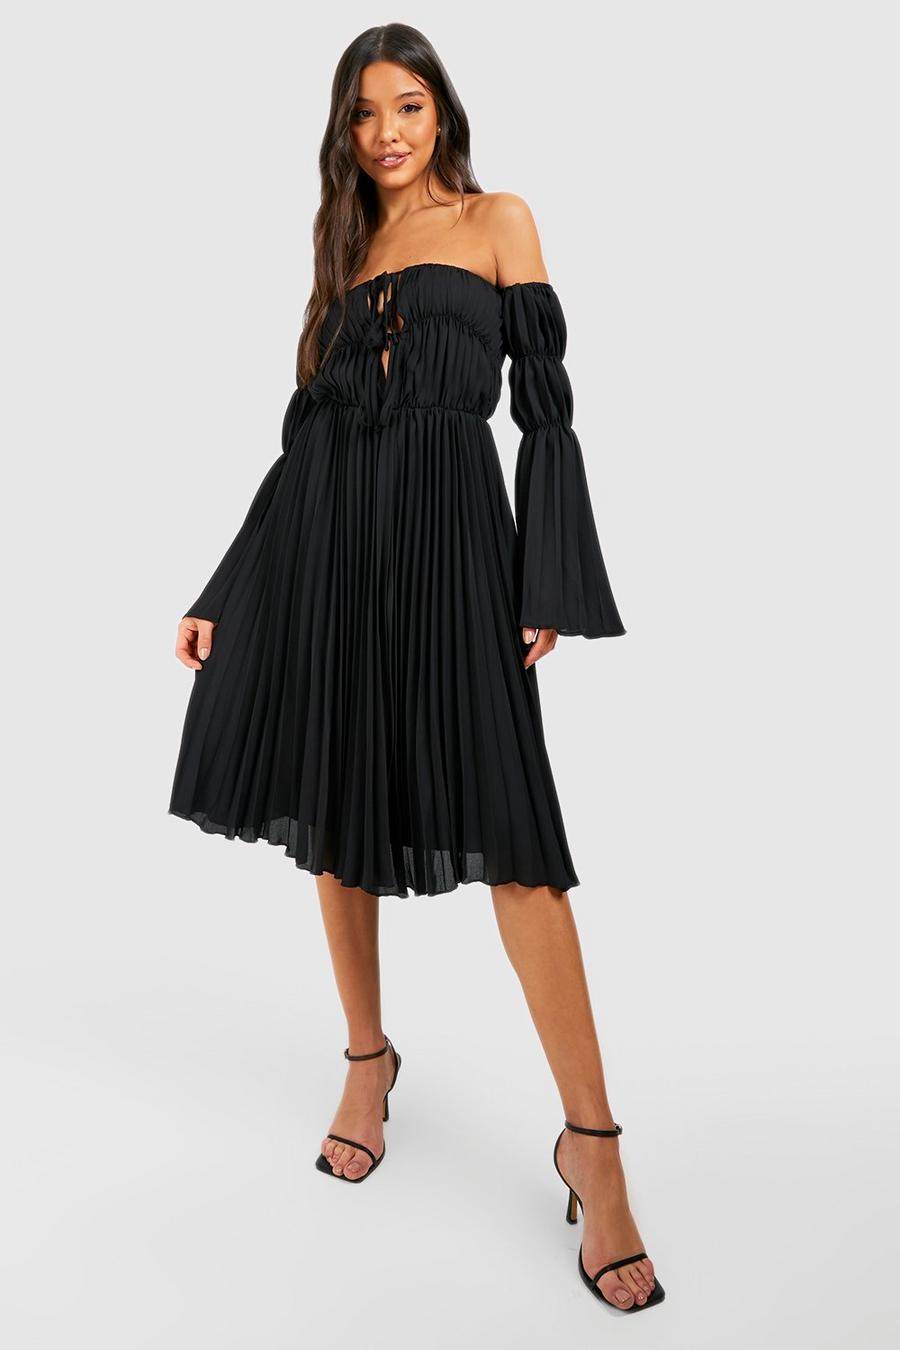 שחור שמלת סקייטר מידי בסגנון ברדו עם קפלים